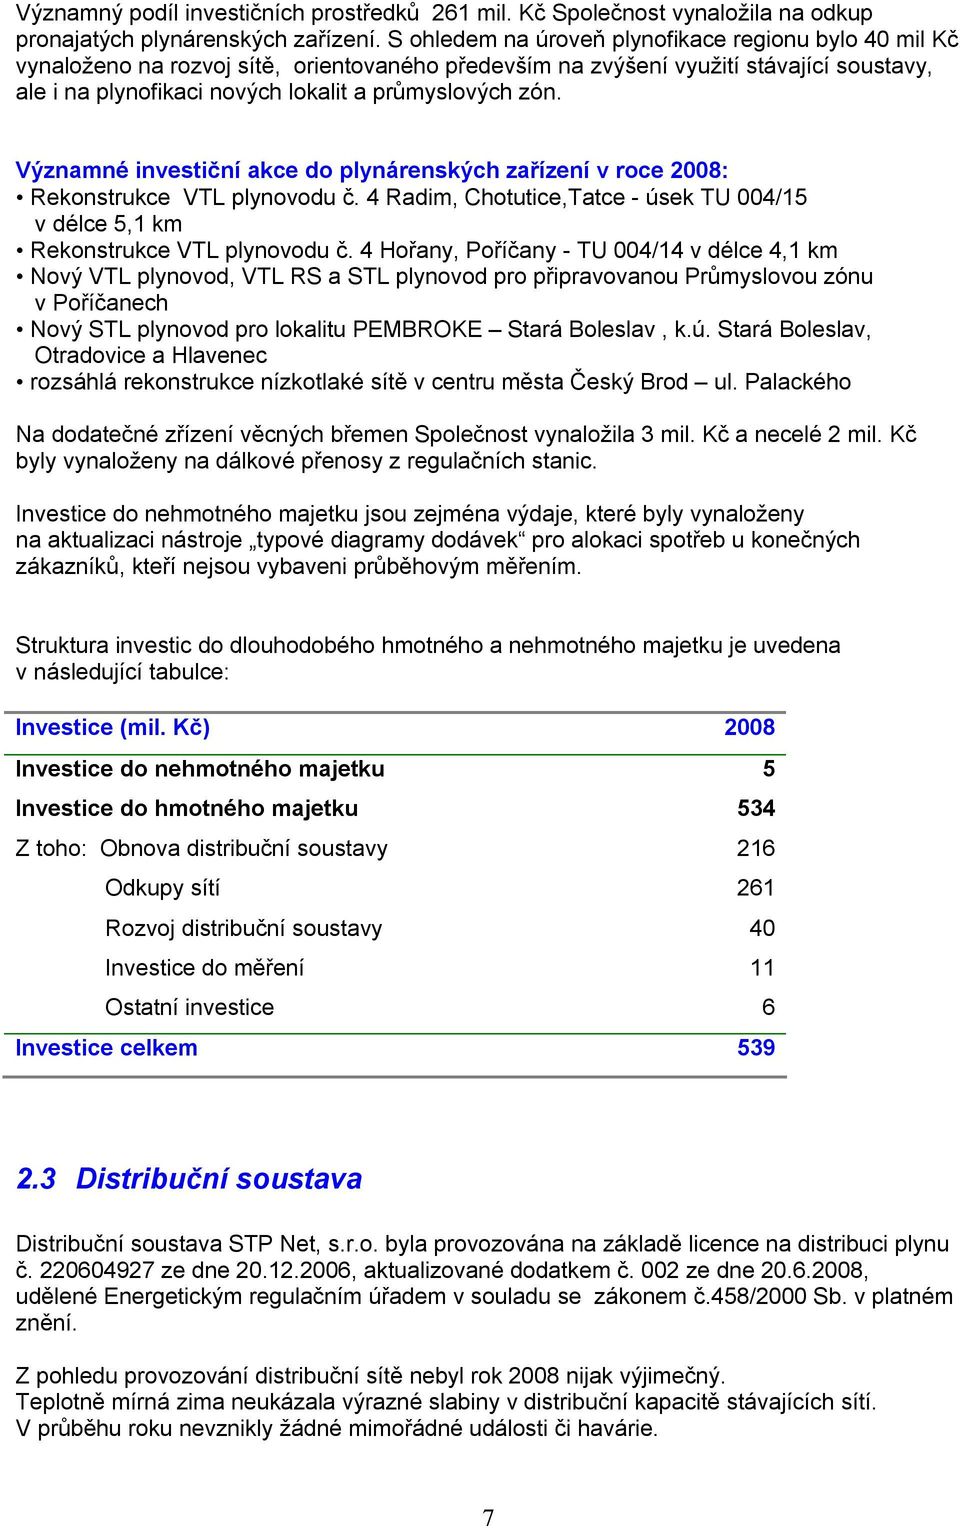 Významné investiční akce do plynárenských zařízení v roce 2008: Rekonstrukce VTL plynovodu č. 4 Radim, Chotutice,Tatce - úsek TU 004/15 v délce 5,1 km Rekonstrukce VTL plynovodu č.